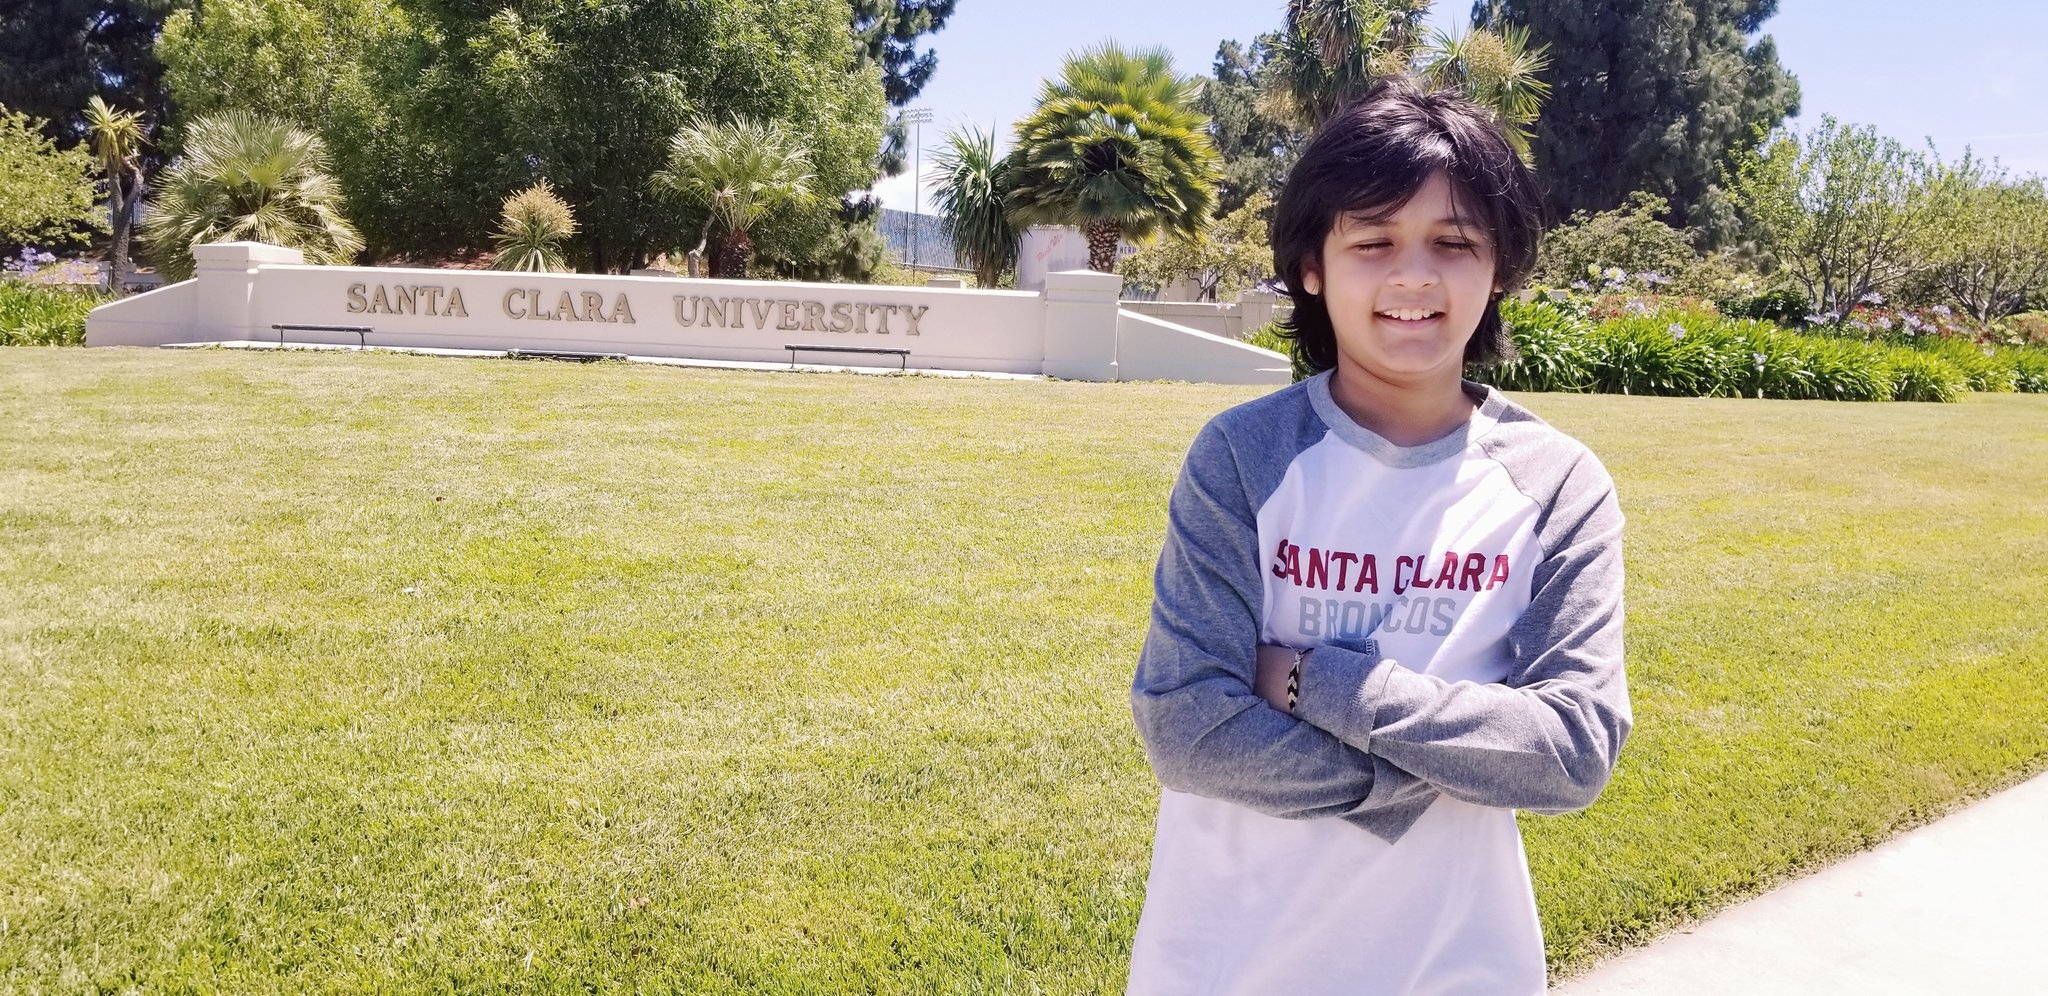 Ο Μασκ προσέλαβε έναν 14χρονο που μόλις αποφοίτησε από το Πανεπιστήμιο της Καλιφόρνιας